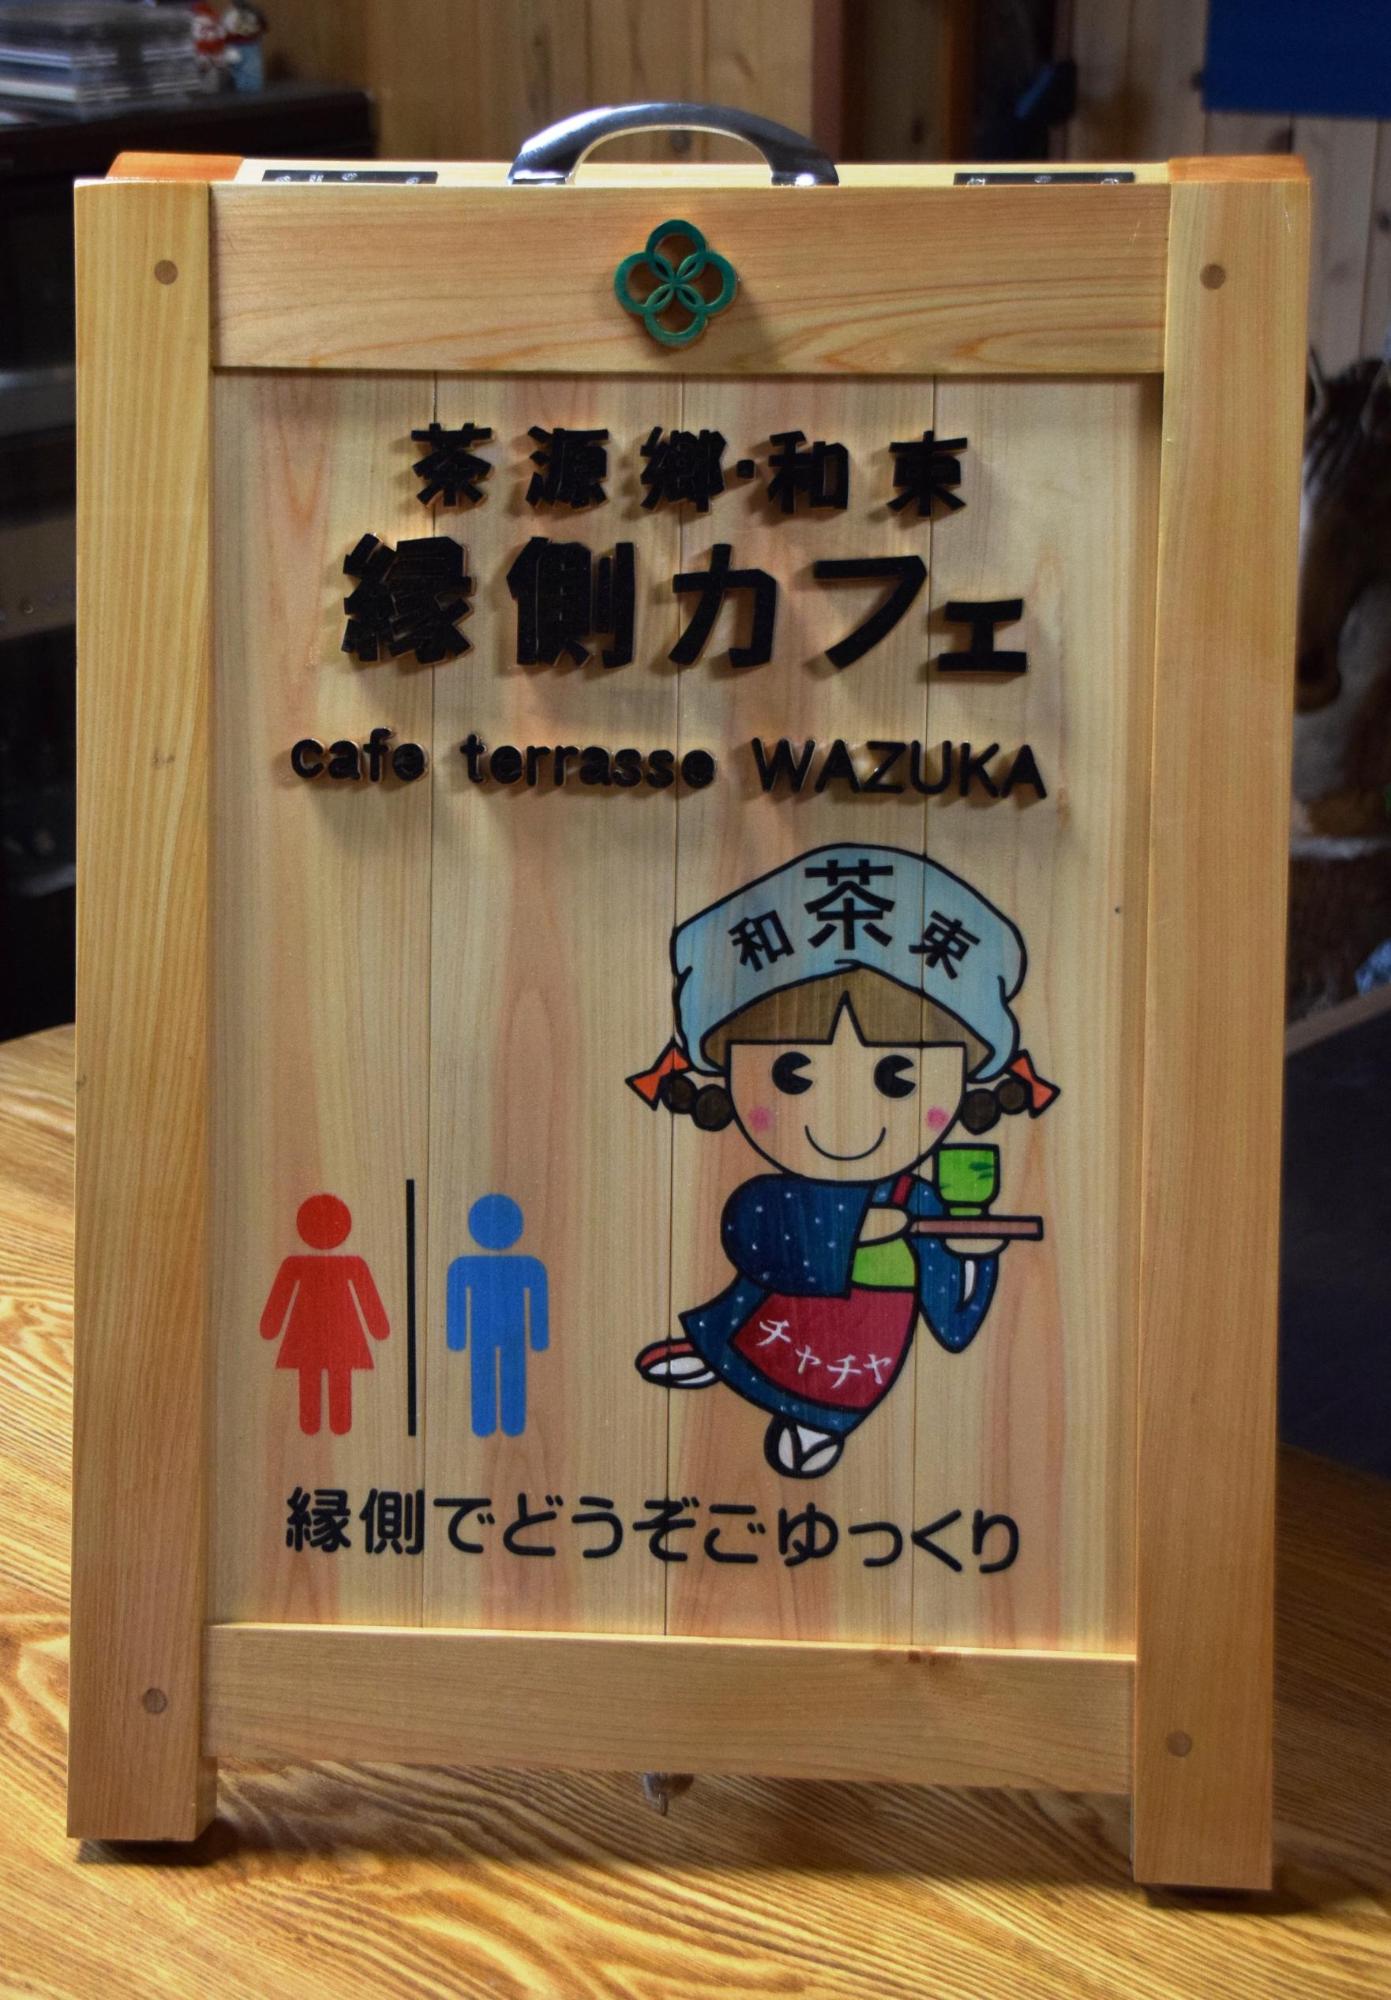 マスコットキャラクターやトイレのマークが記載された茶源郷和束・縁側カフェの看板の写真